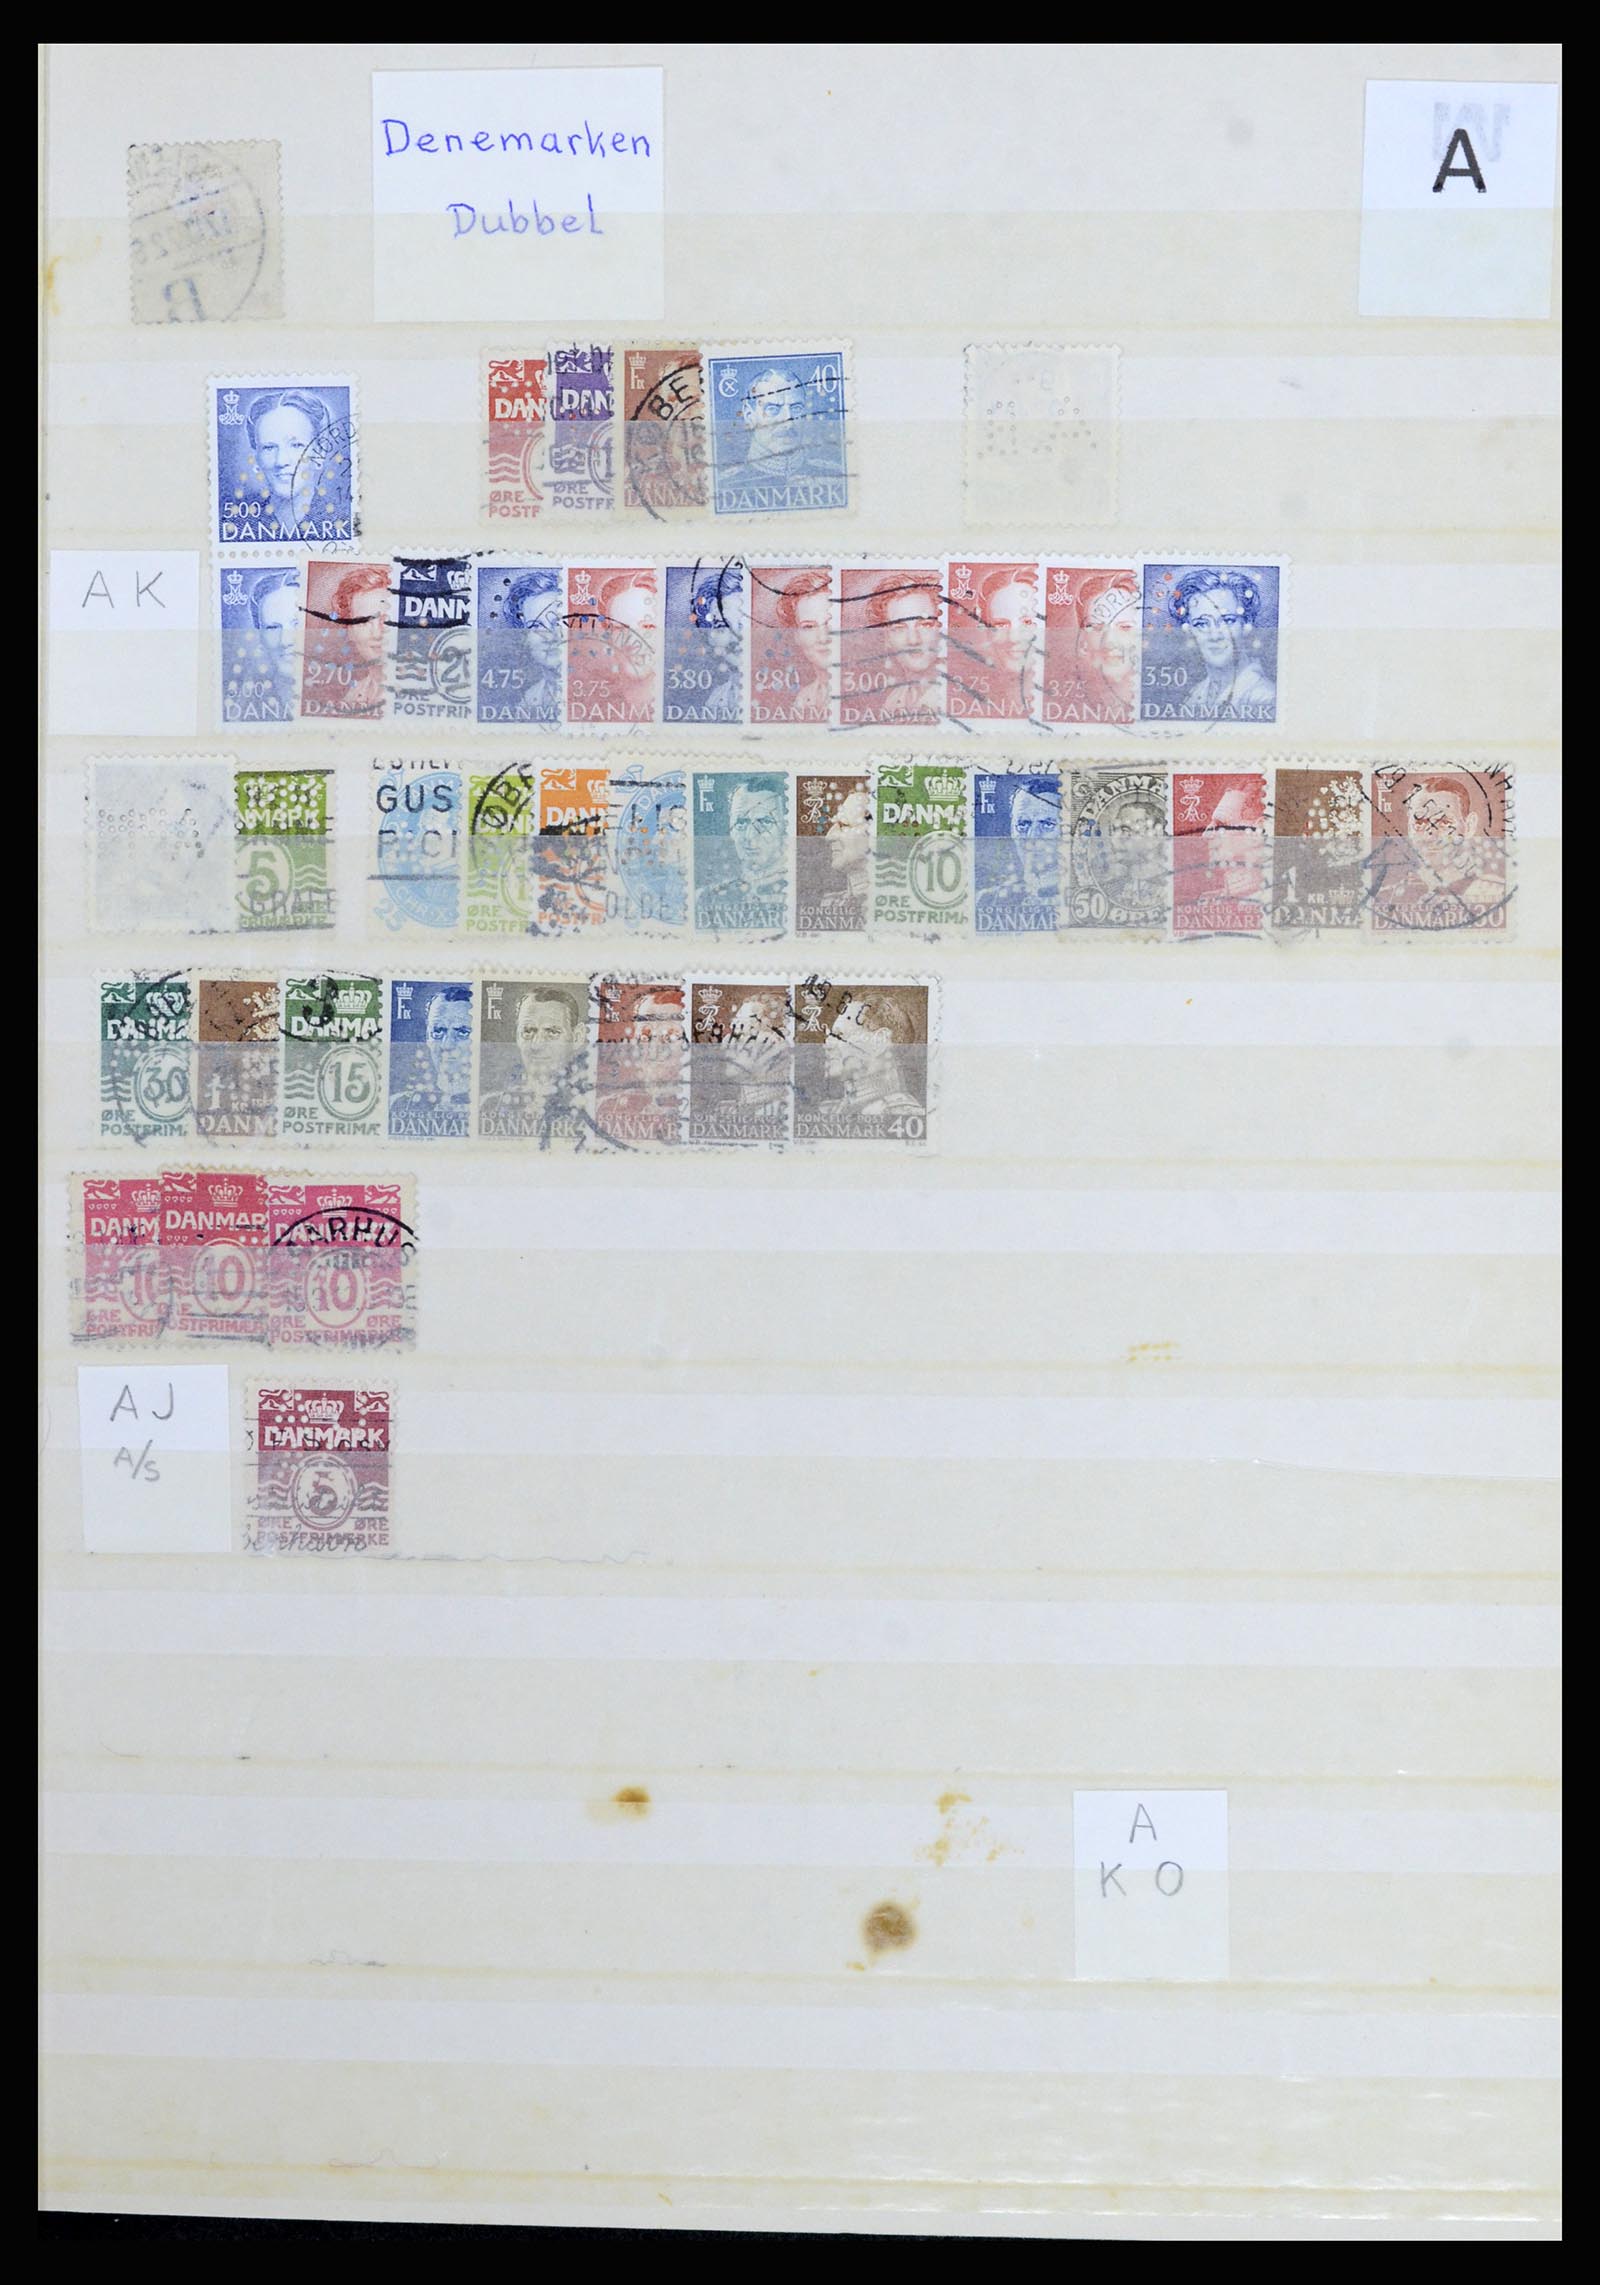 37056 042 - Postzegelverzameling 37056 Denemarken perfins.